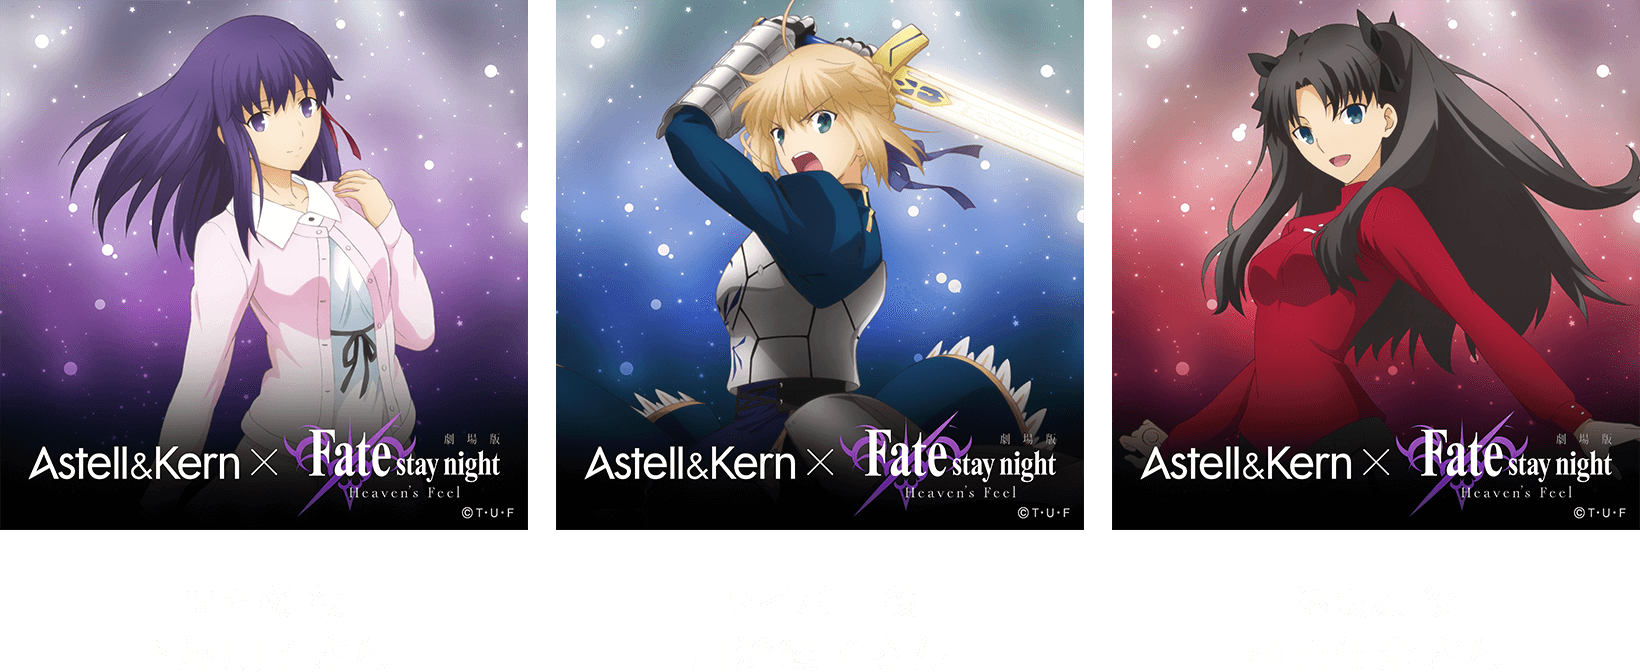 聖なるサウンドをマスターへ。 Astell&Kern × Fate stay night